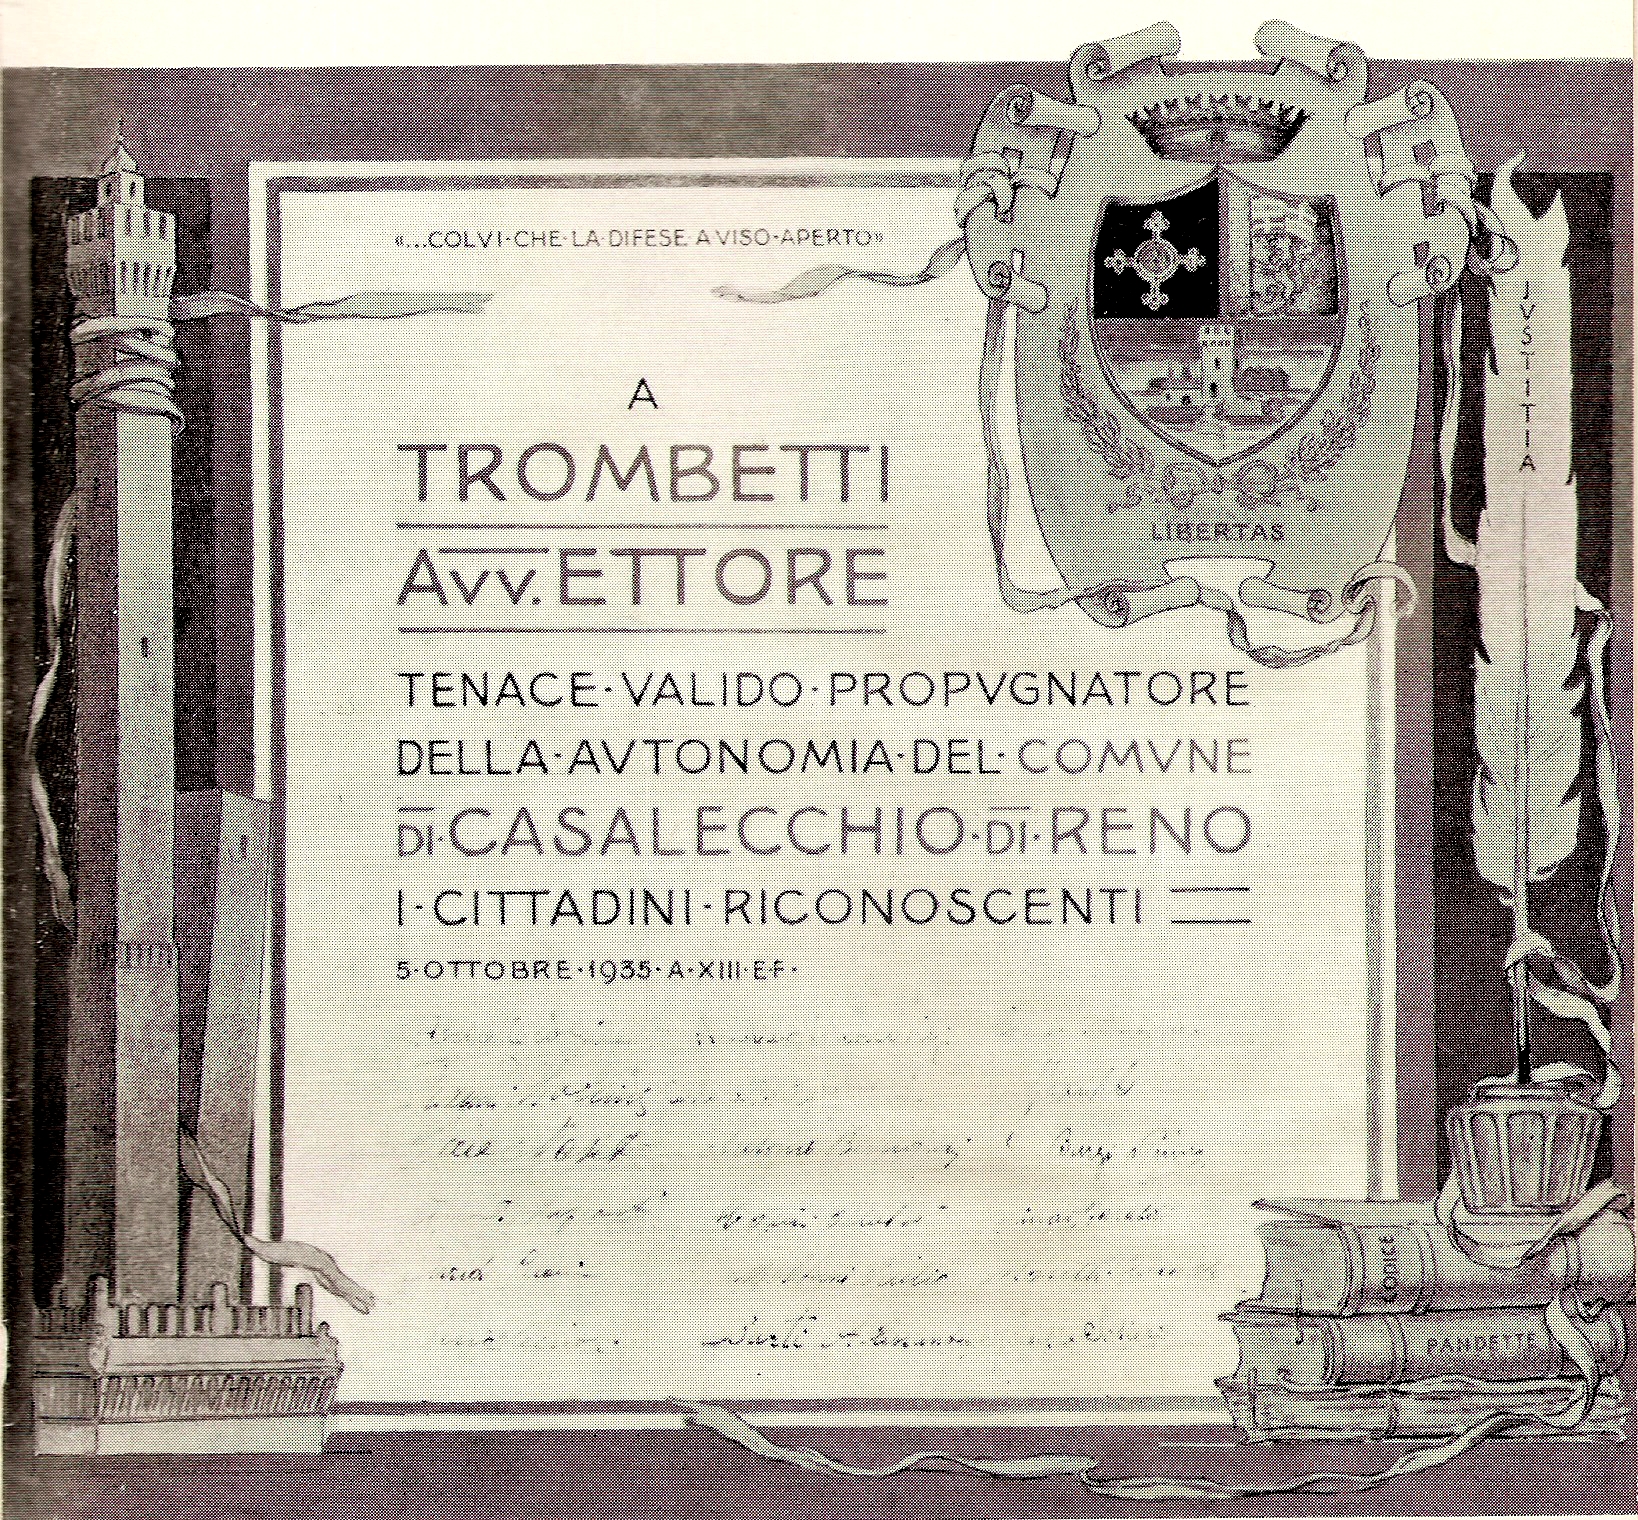 La pergamena, dipinta da Nasica, omaggio dei casalecchiesi all’Avv.to Ettore Trombetti